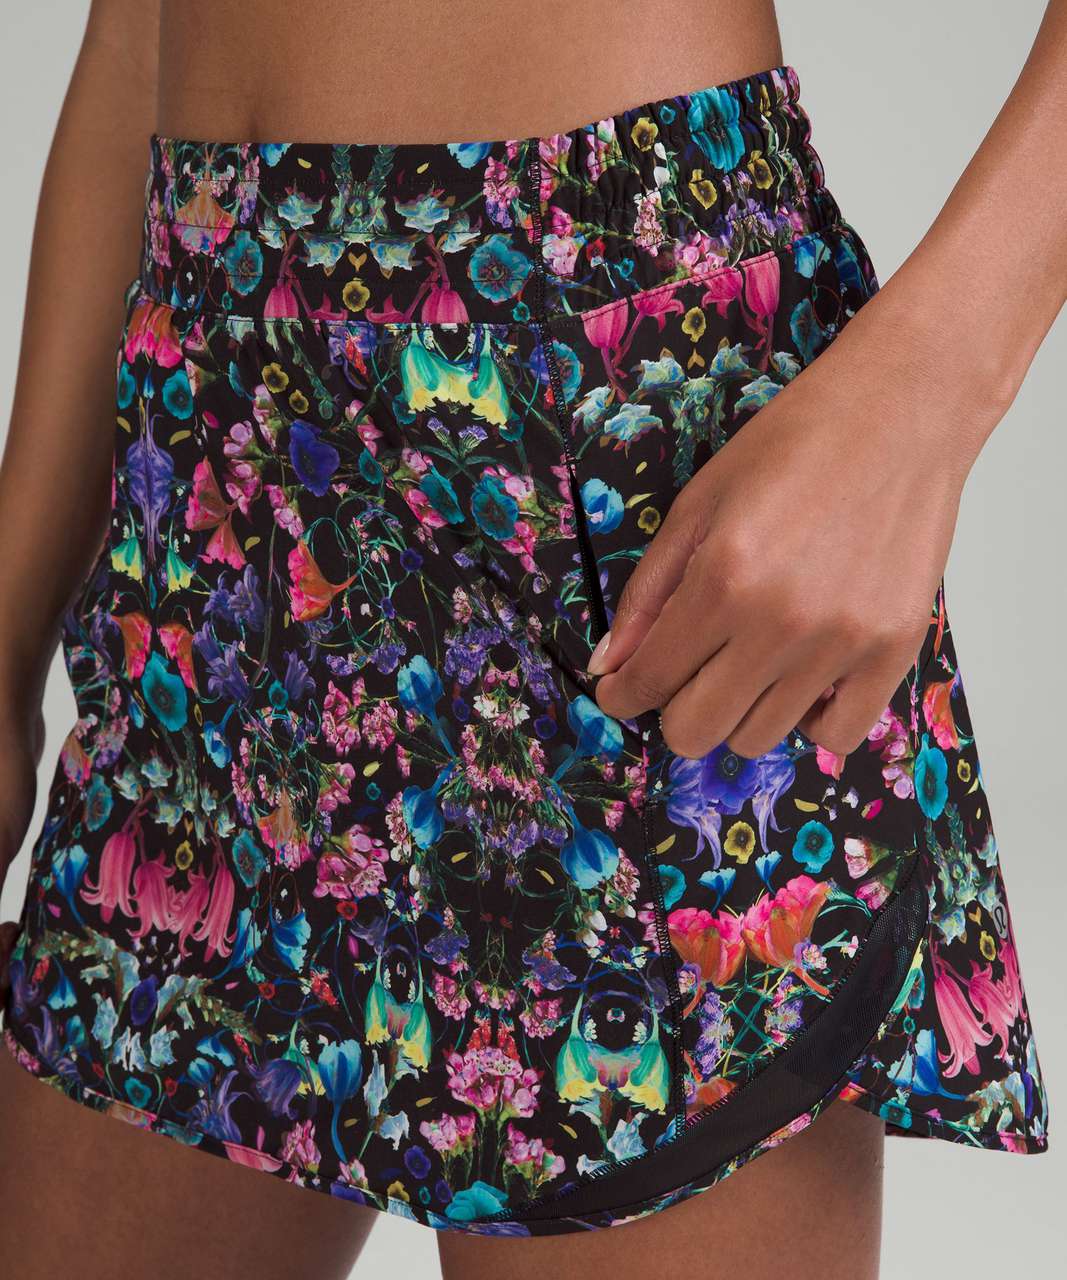 Lululemon Hotty Hot High-Rise Skirt - Flowerscope Black Multi / Black